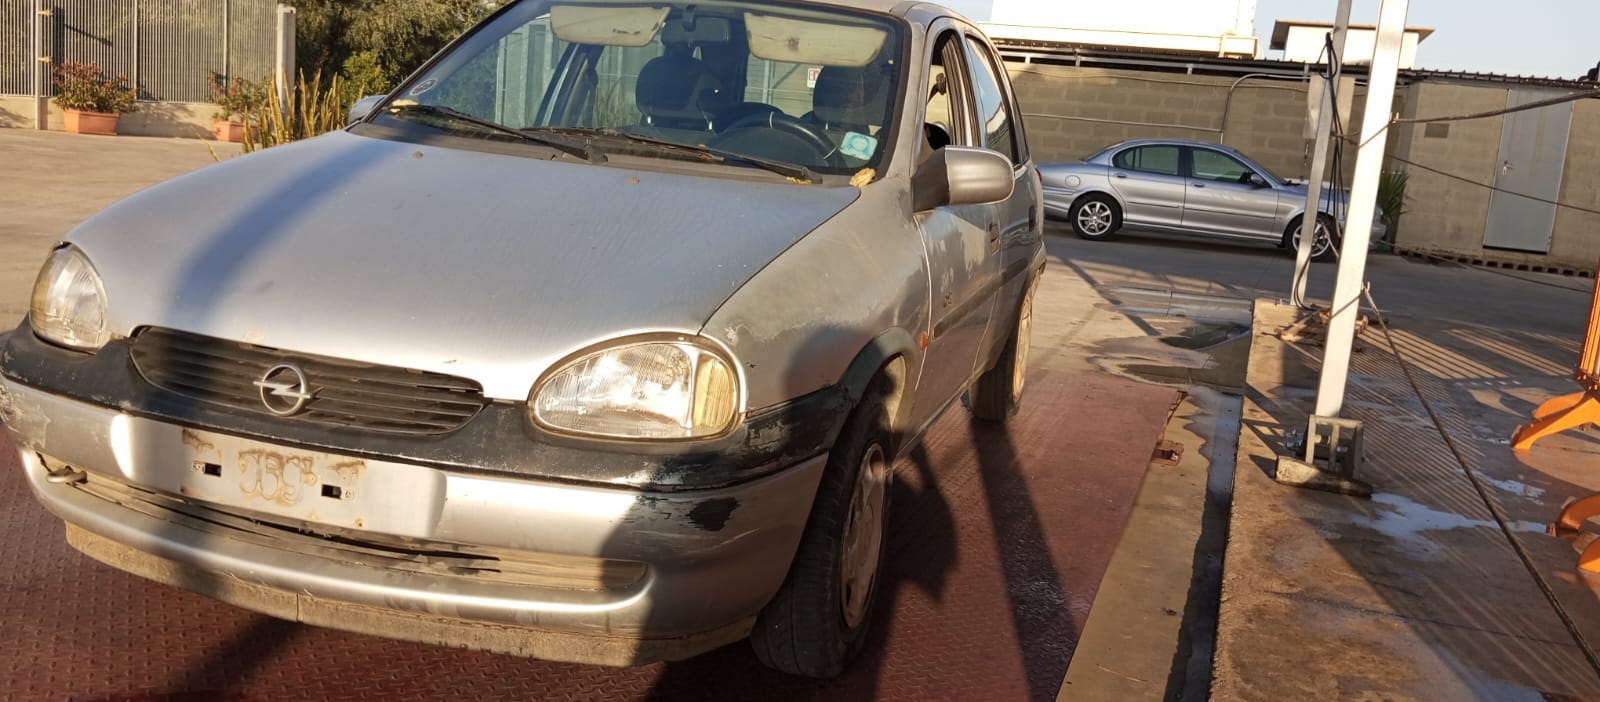 Al momento stai visualizzando Opel Corsa del 1998 disponibile nel nostro autoparco di demolizione per la vendita dei ricambi usati. Info solo telefonando al 348 5846422. Universal Car di Nicola Ladisa.